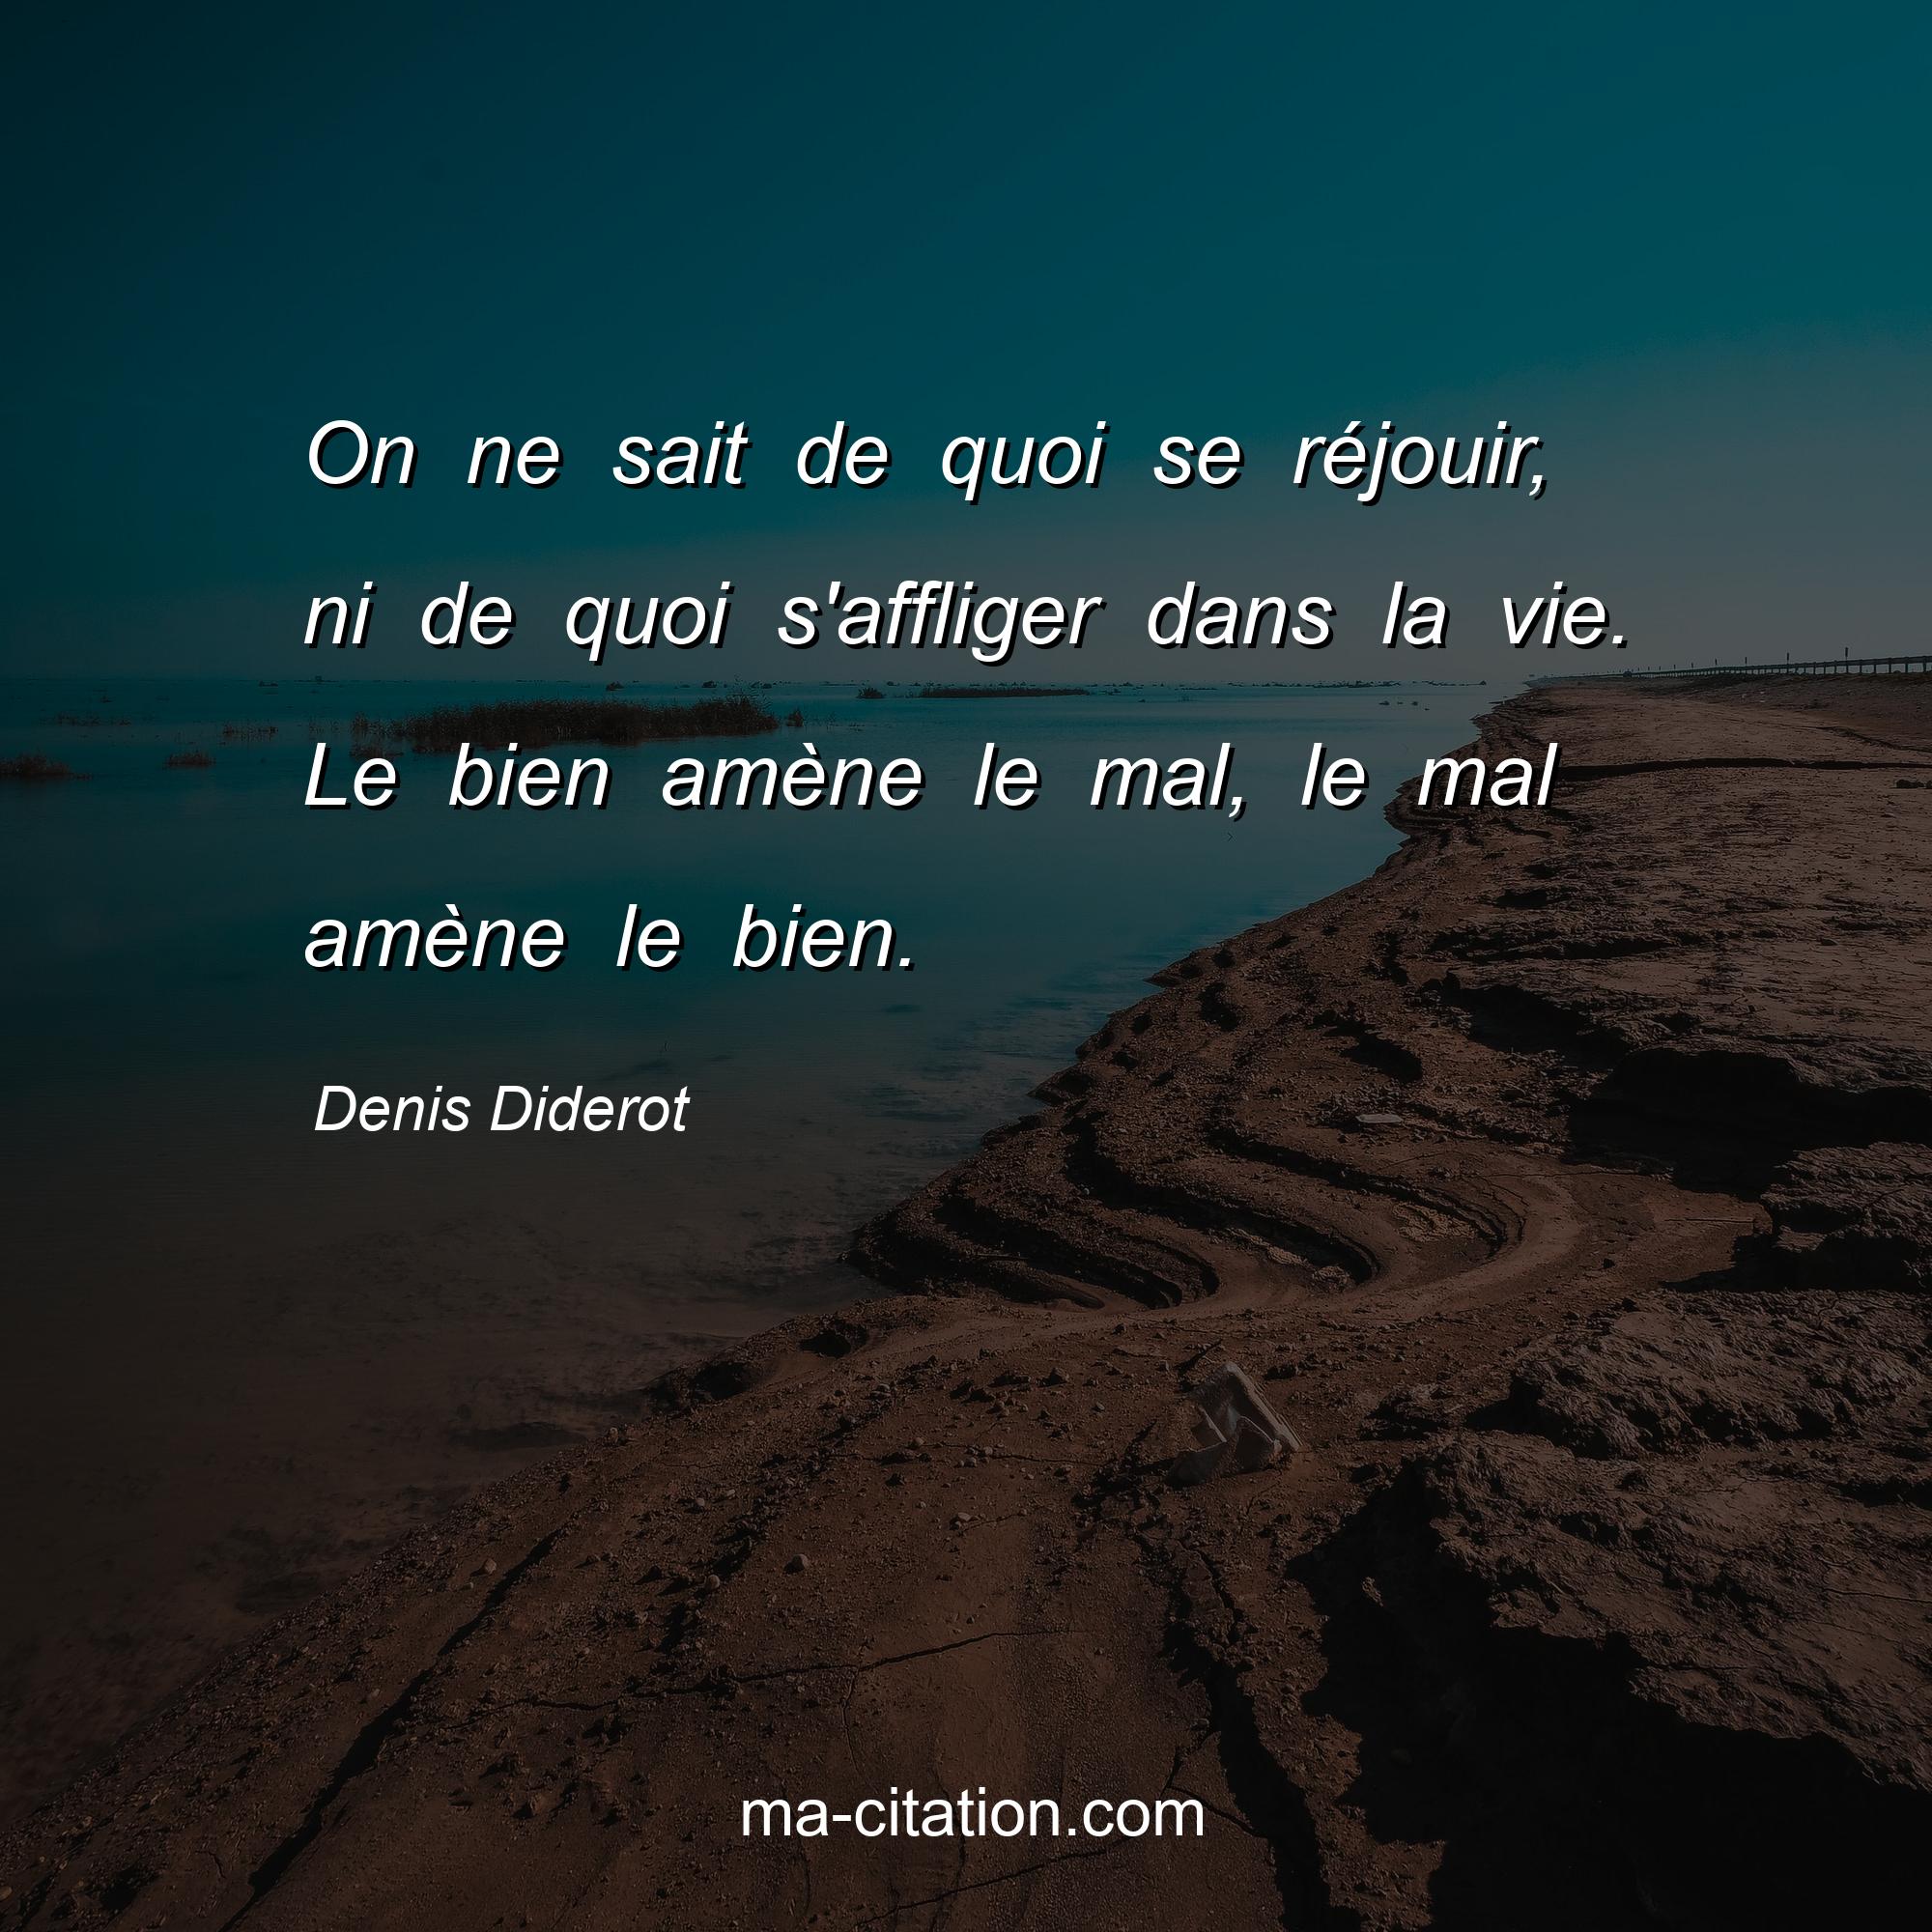 Denis Diderot : On ne sait de quoi se réjouir, ni de quoi s'affliger dans la vie. Le bien amène le mal, le mal amène le bien.